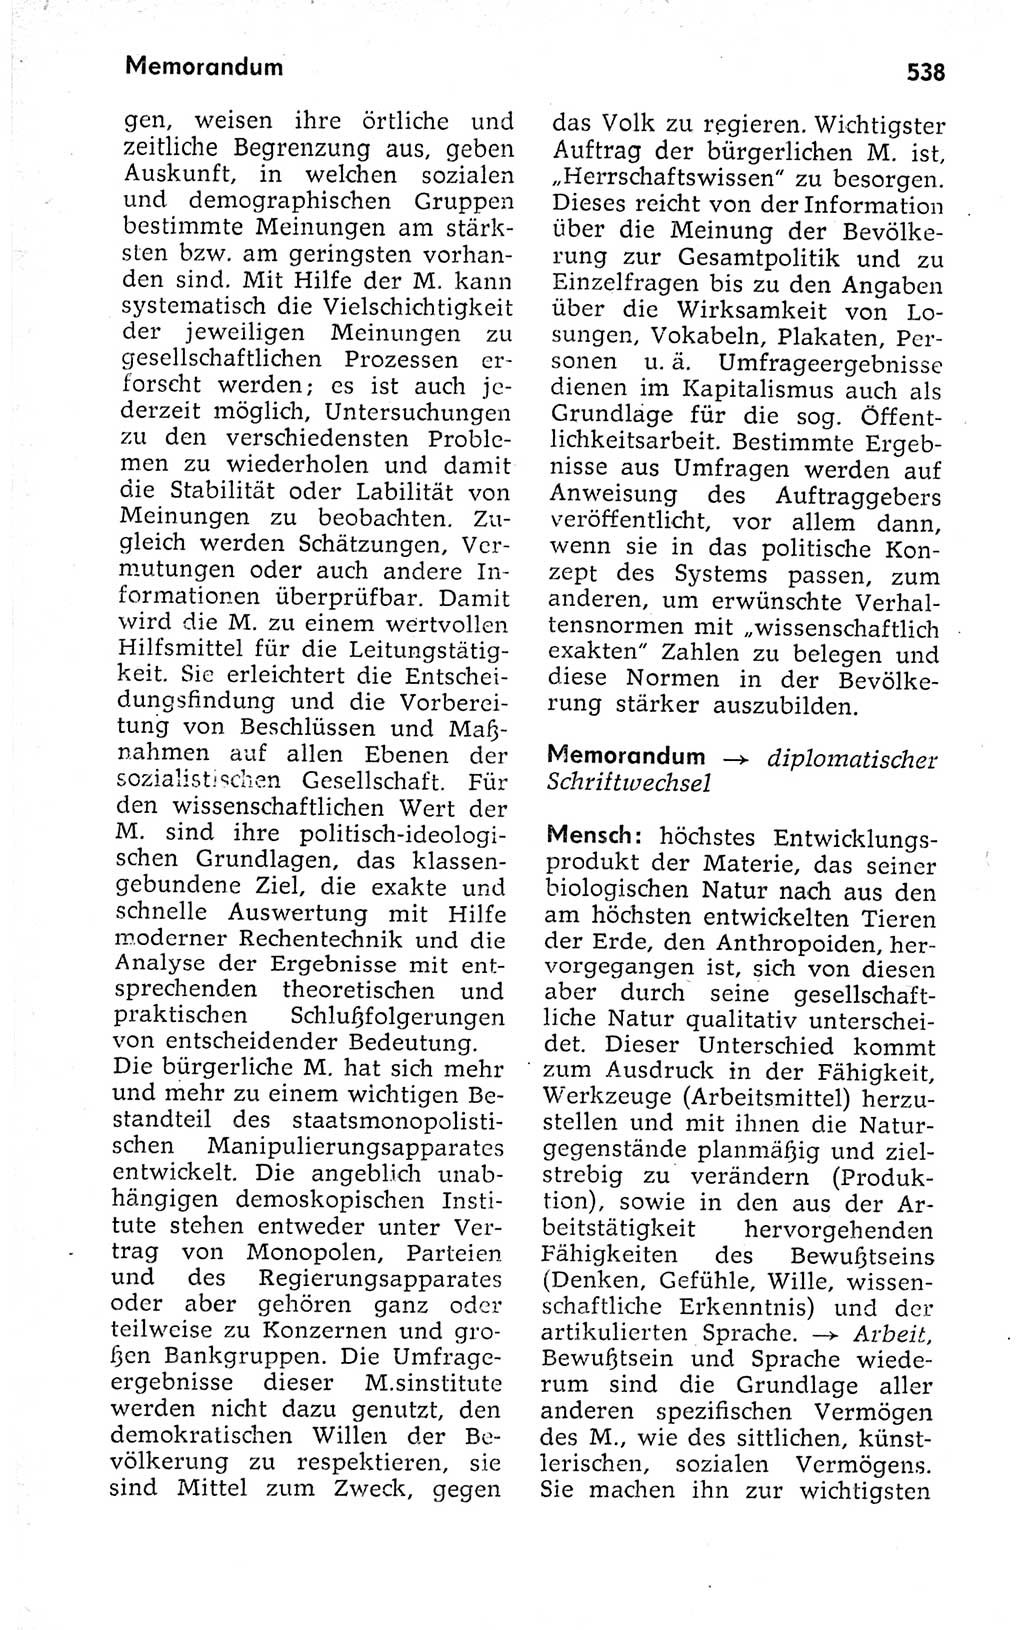 Kleines politisches Wörterbuch [Deutsche Demokratische Republik (DDR)] 1973, Seite 538 (Kl. pol. Wb. DDR 1973, S. 538)